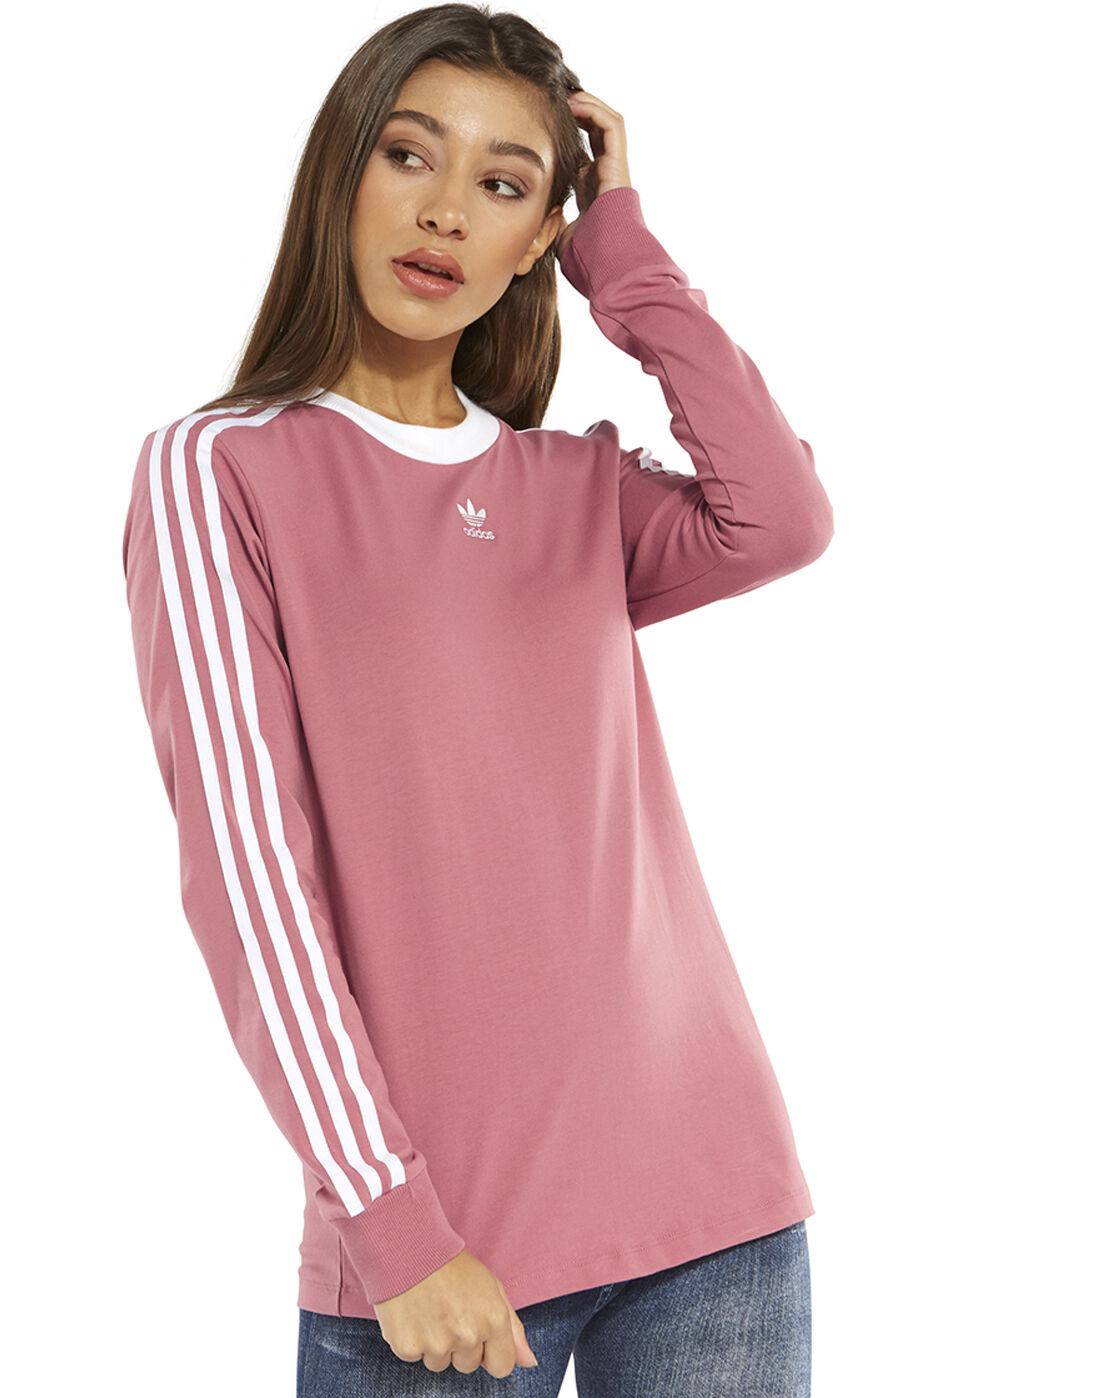 women's pink adidas t shirt